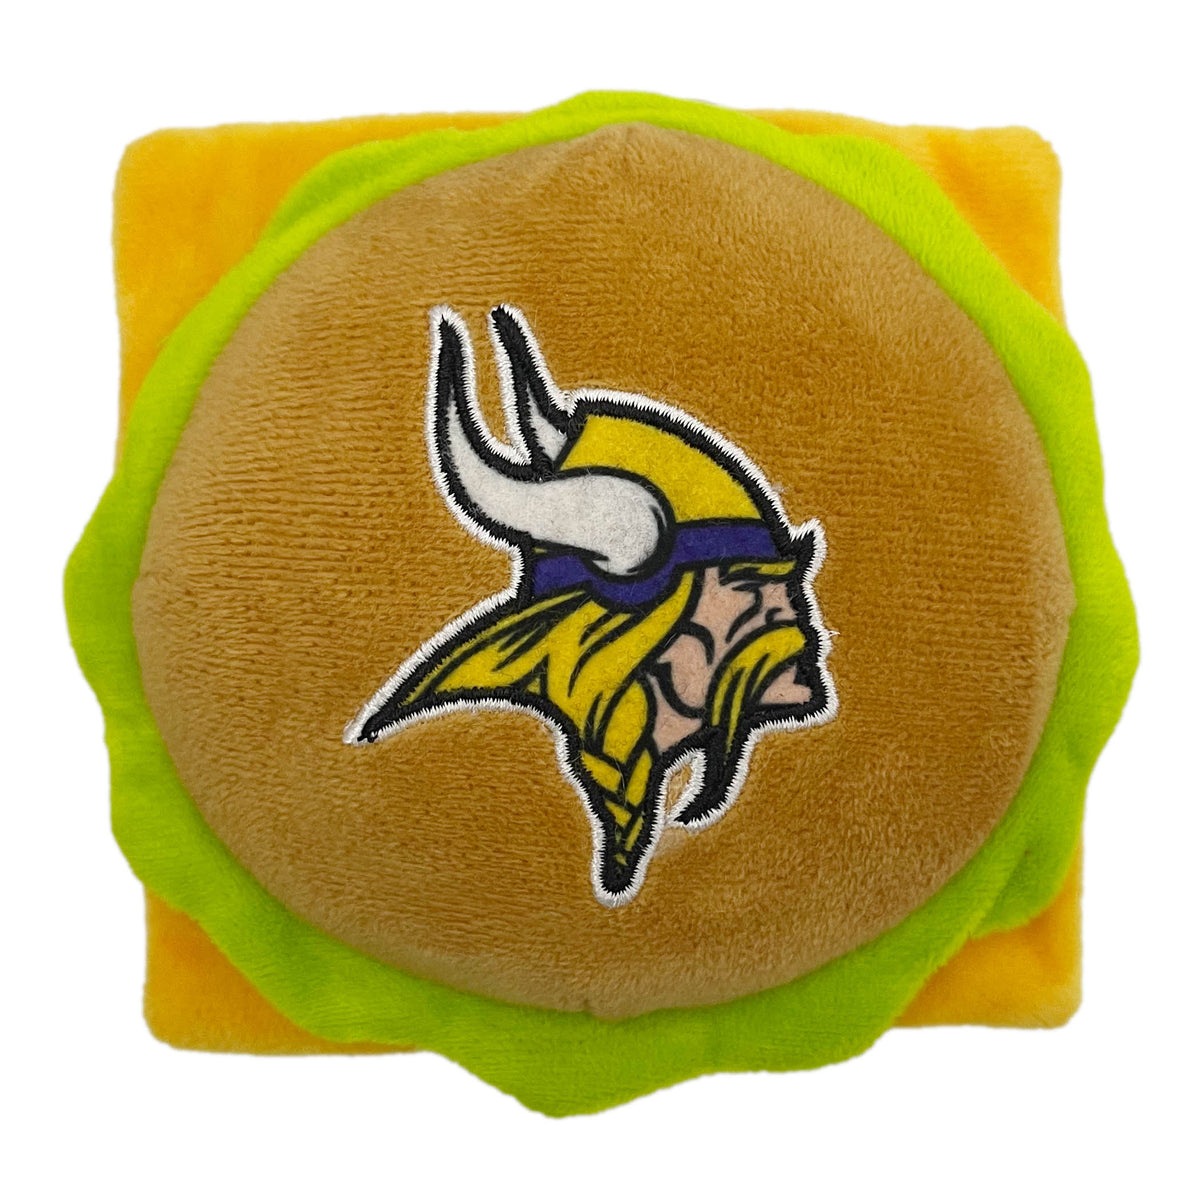 Minnesota Vikings Hamburger Plush Toys